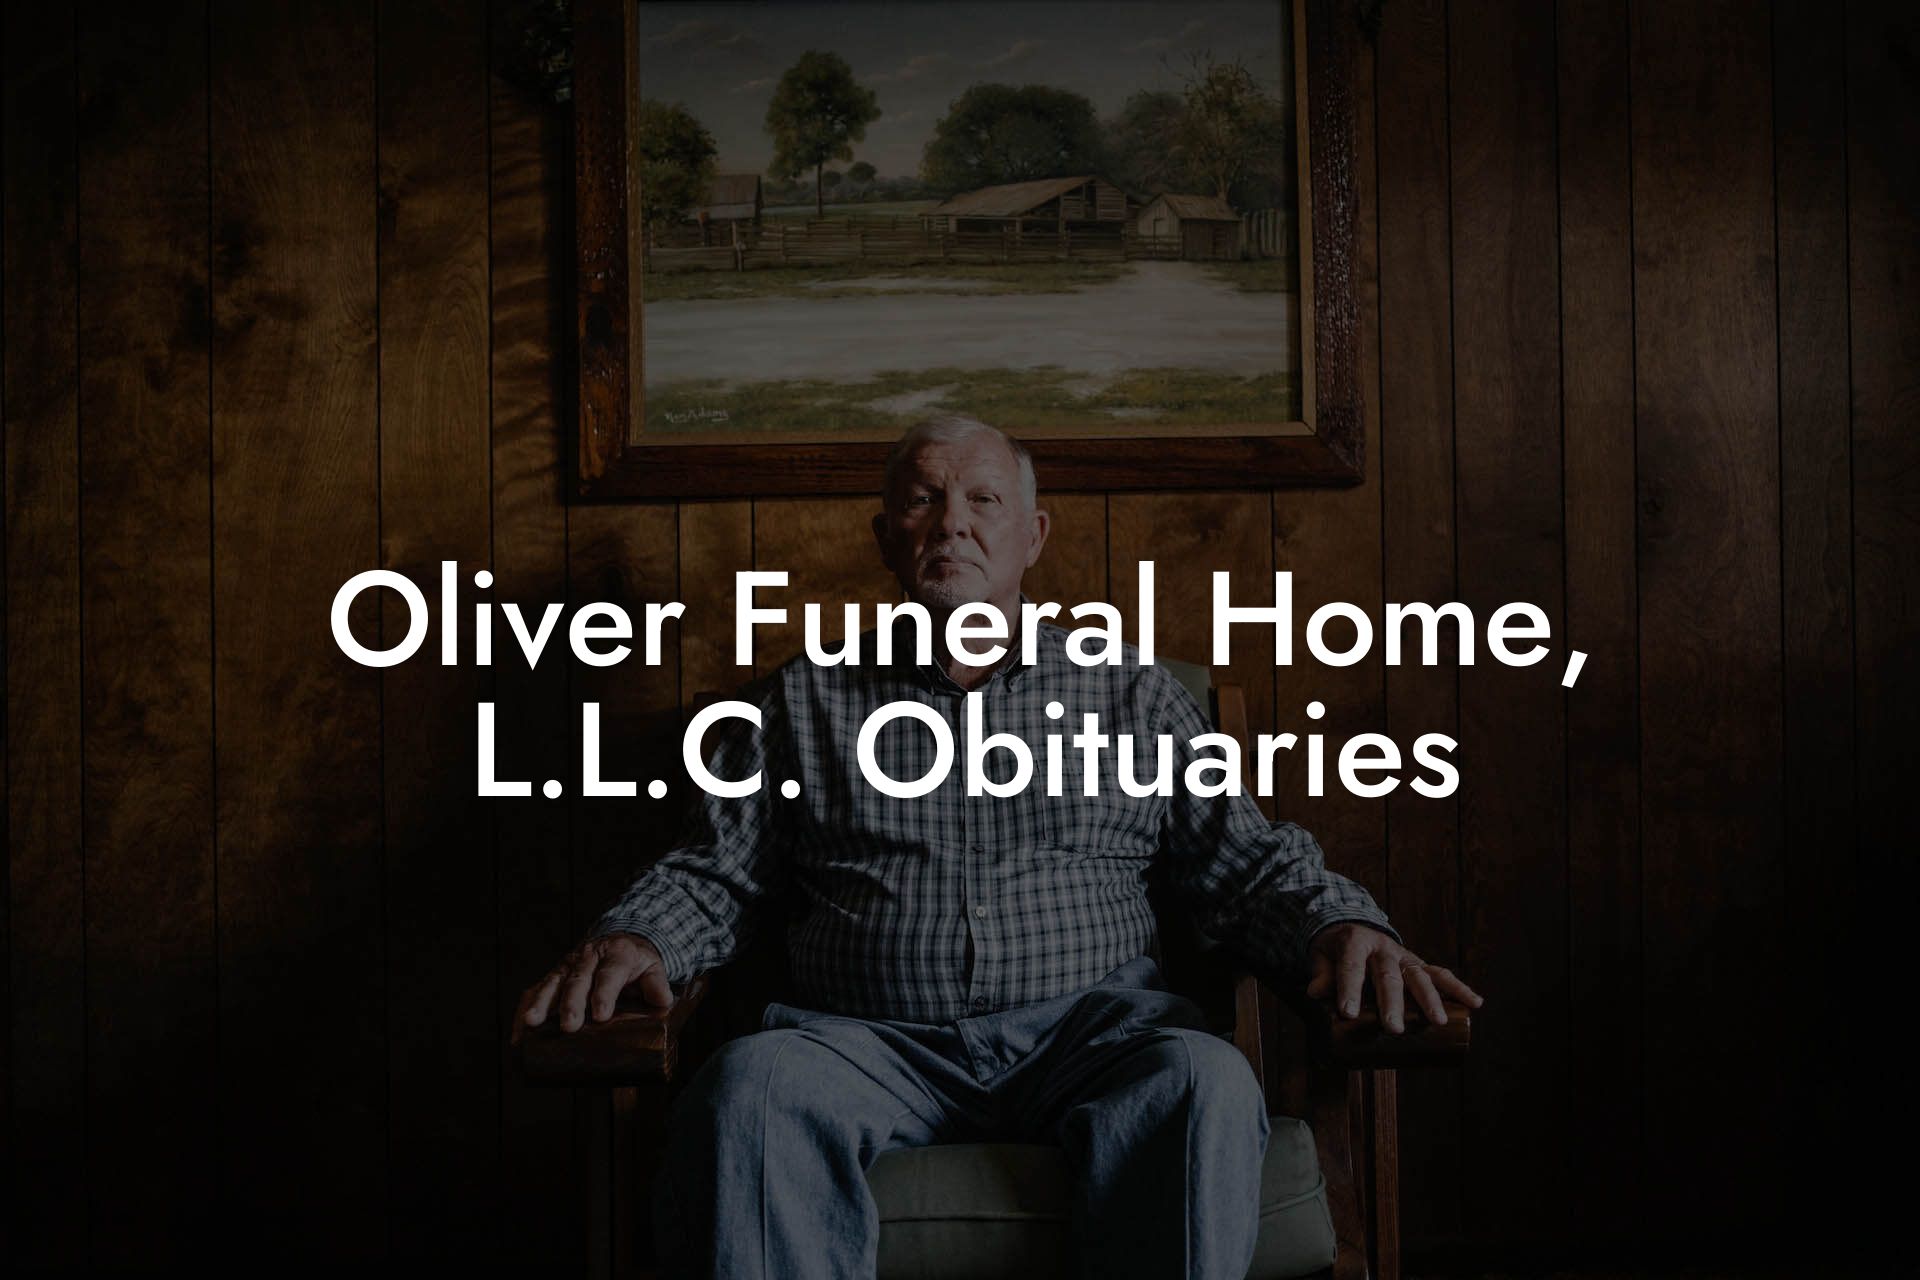 Oliver Funeral Home, L.L.C. Obituaries